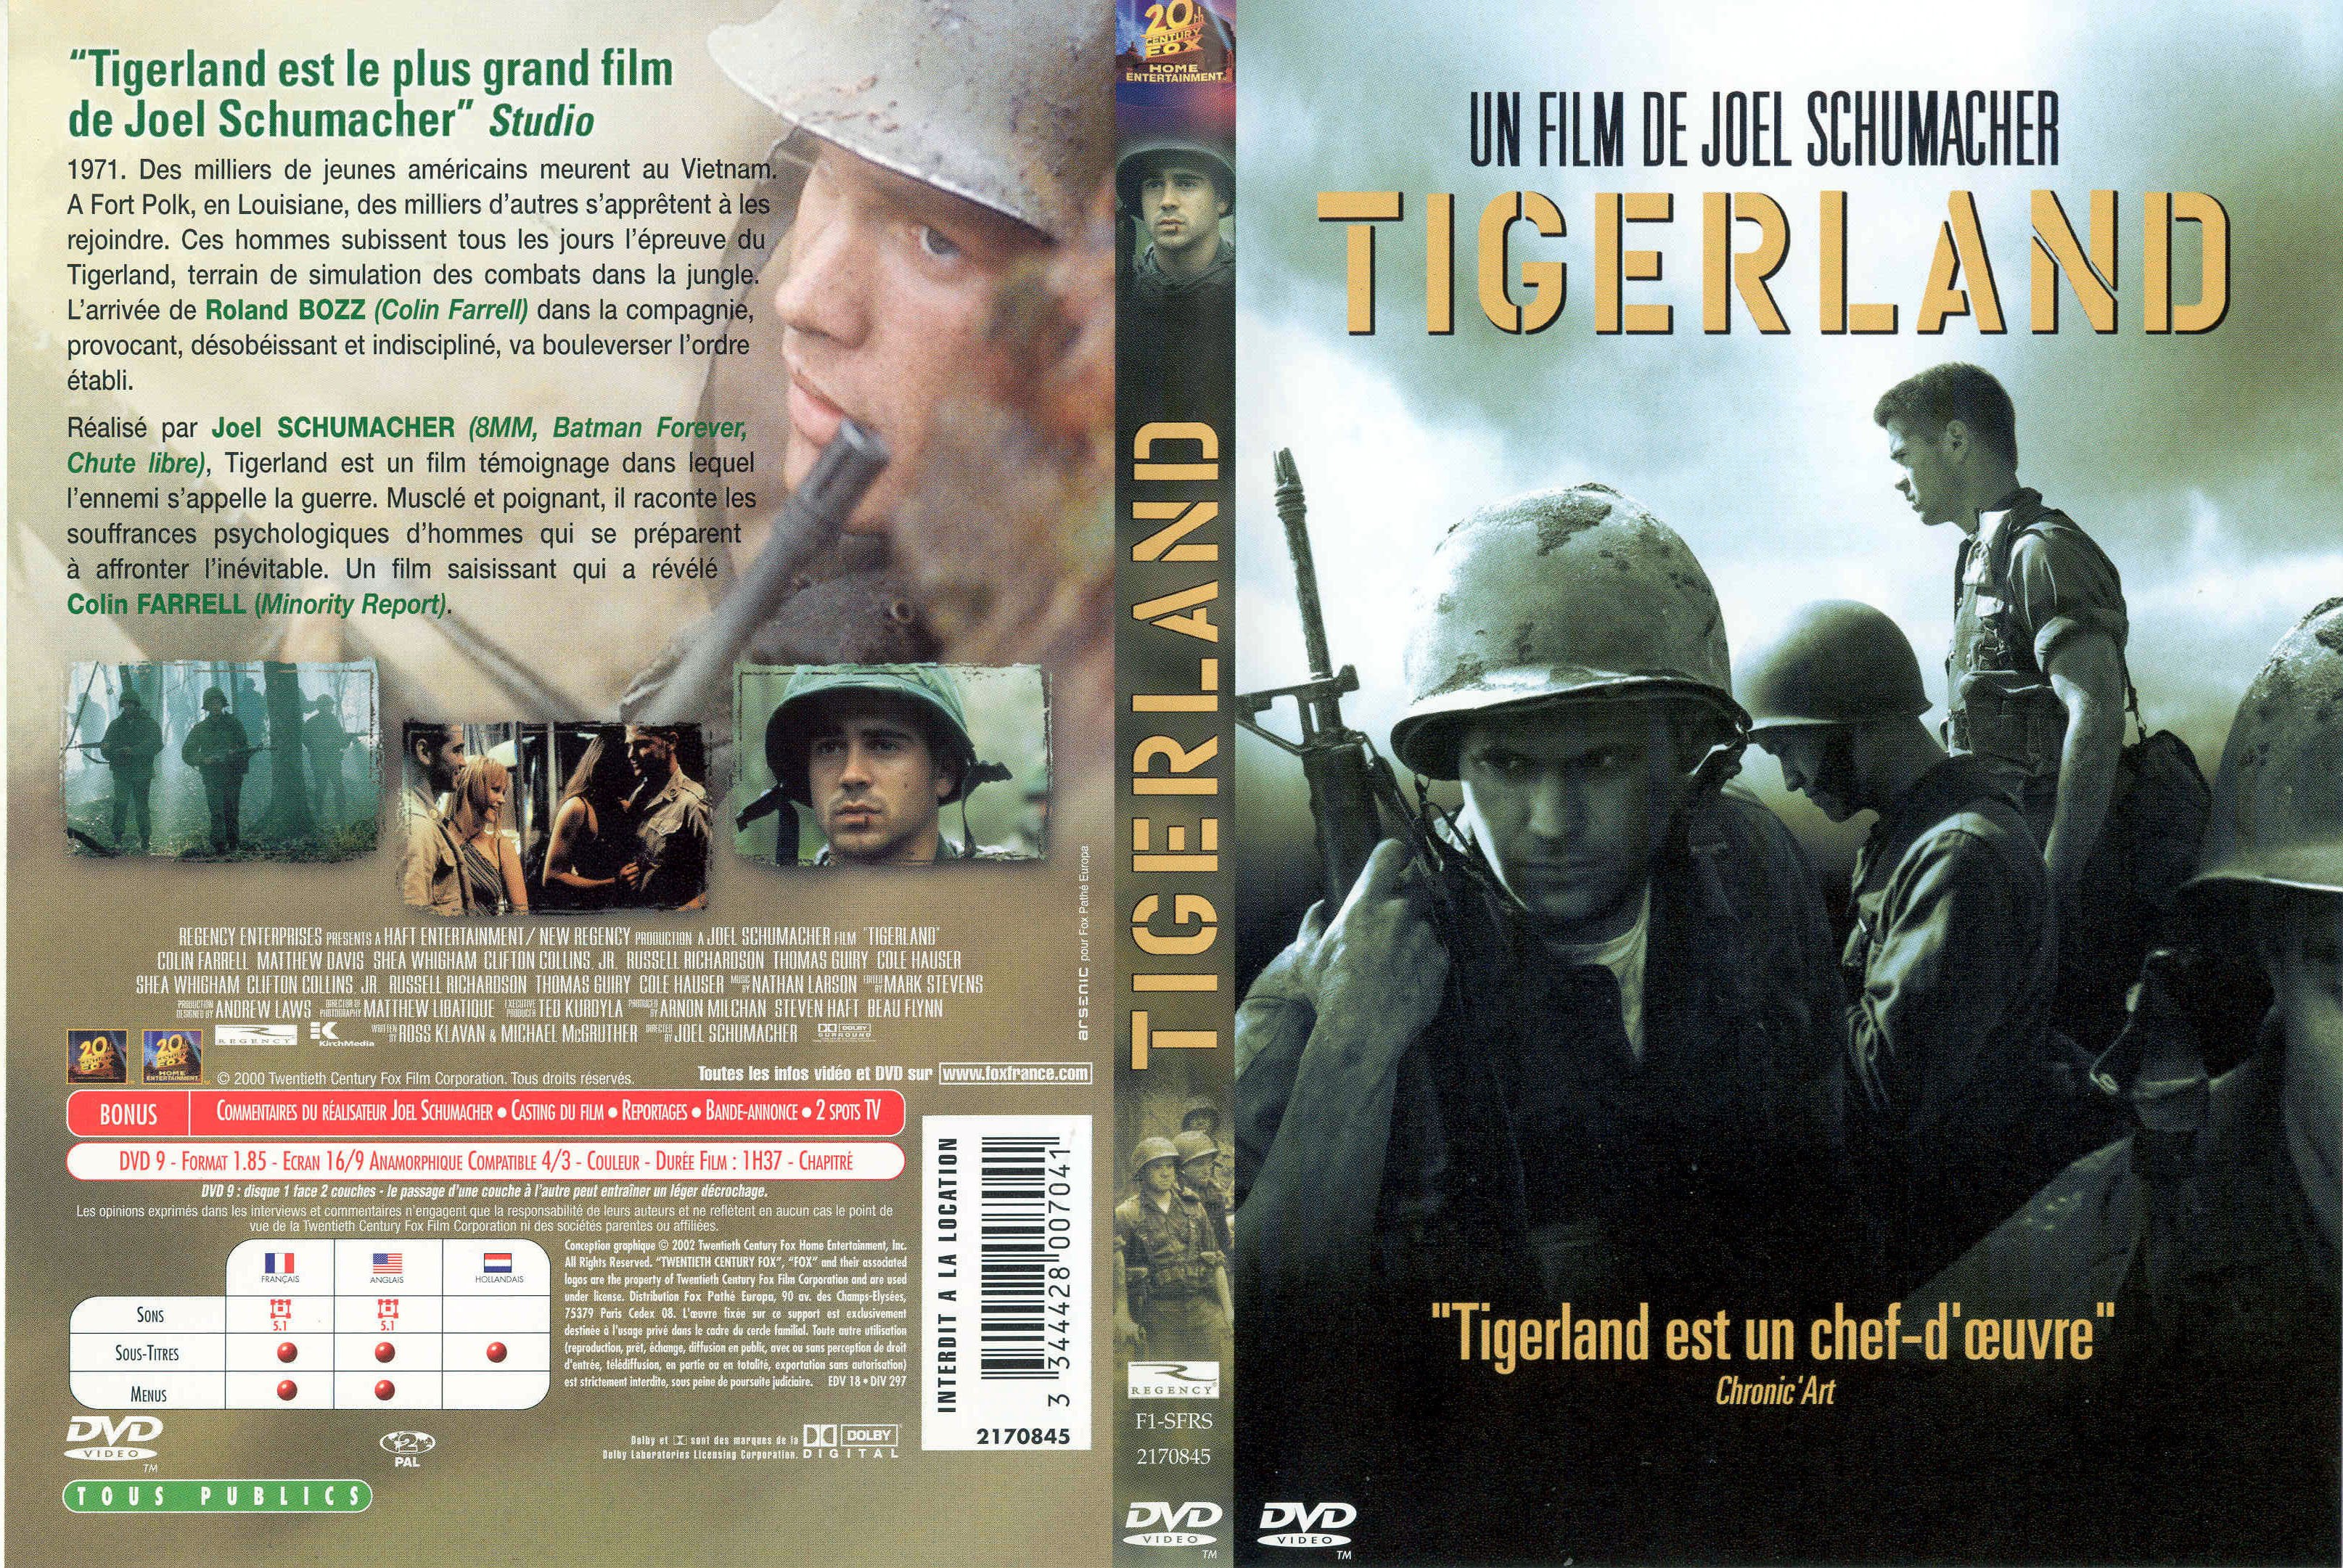 Jaquette DVD Tigerland v2